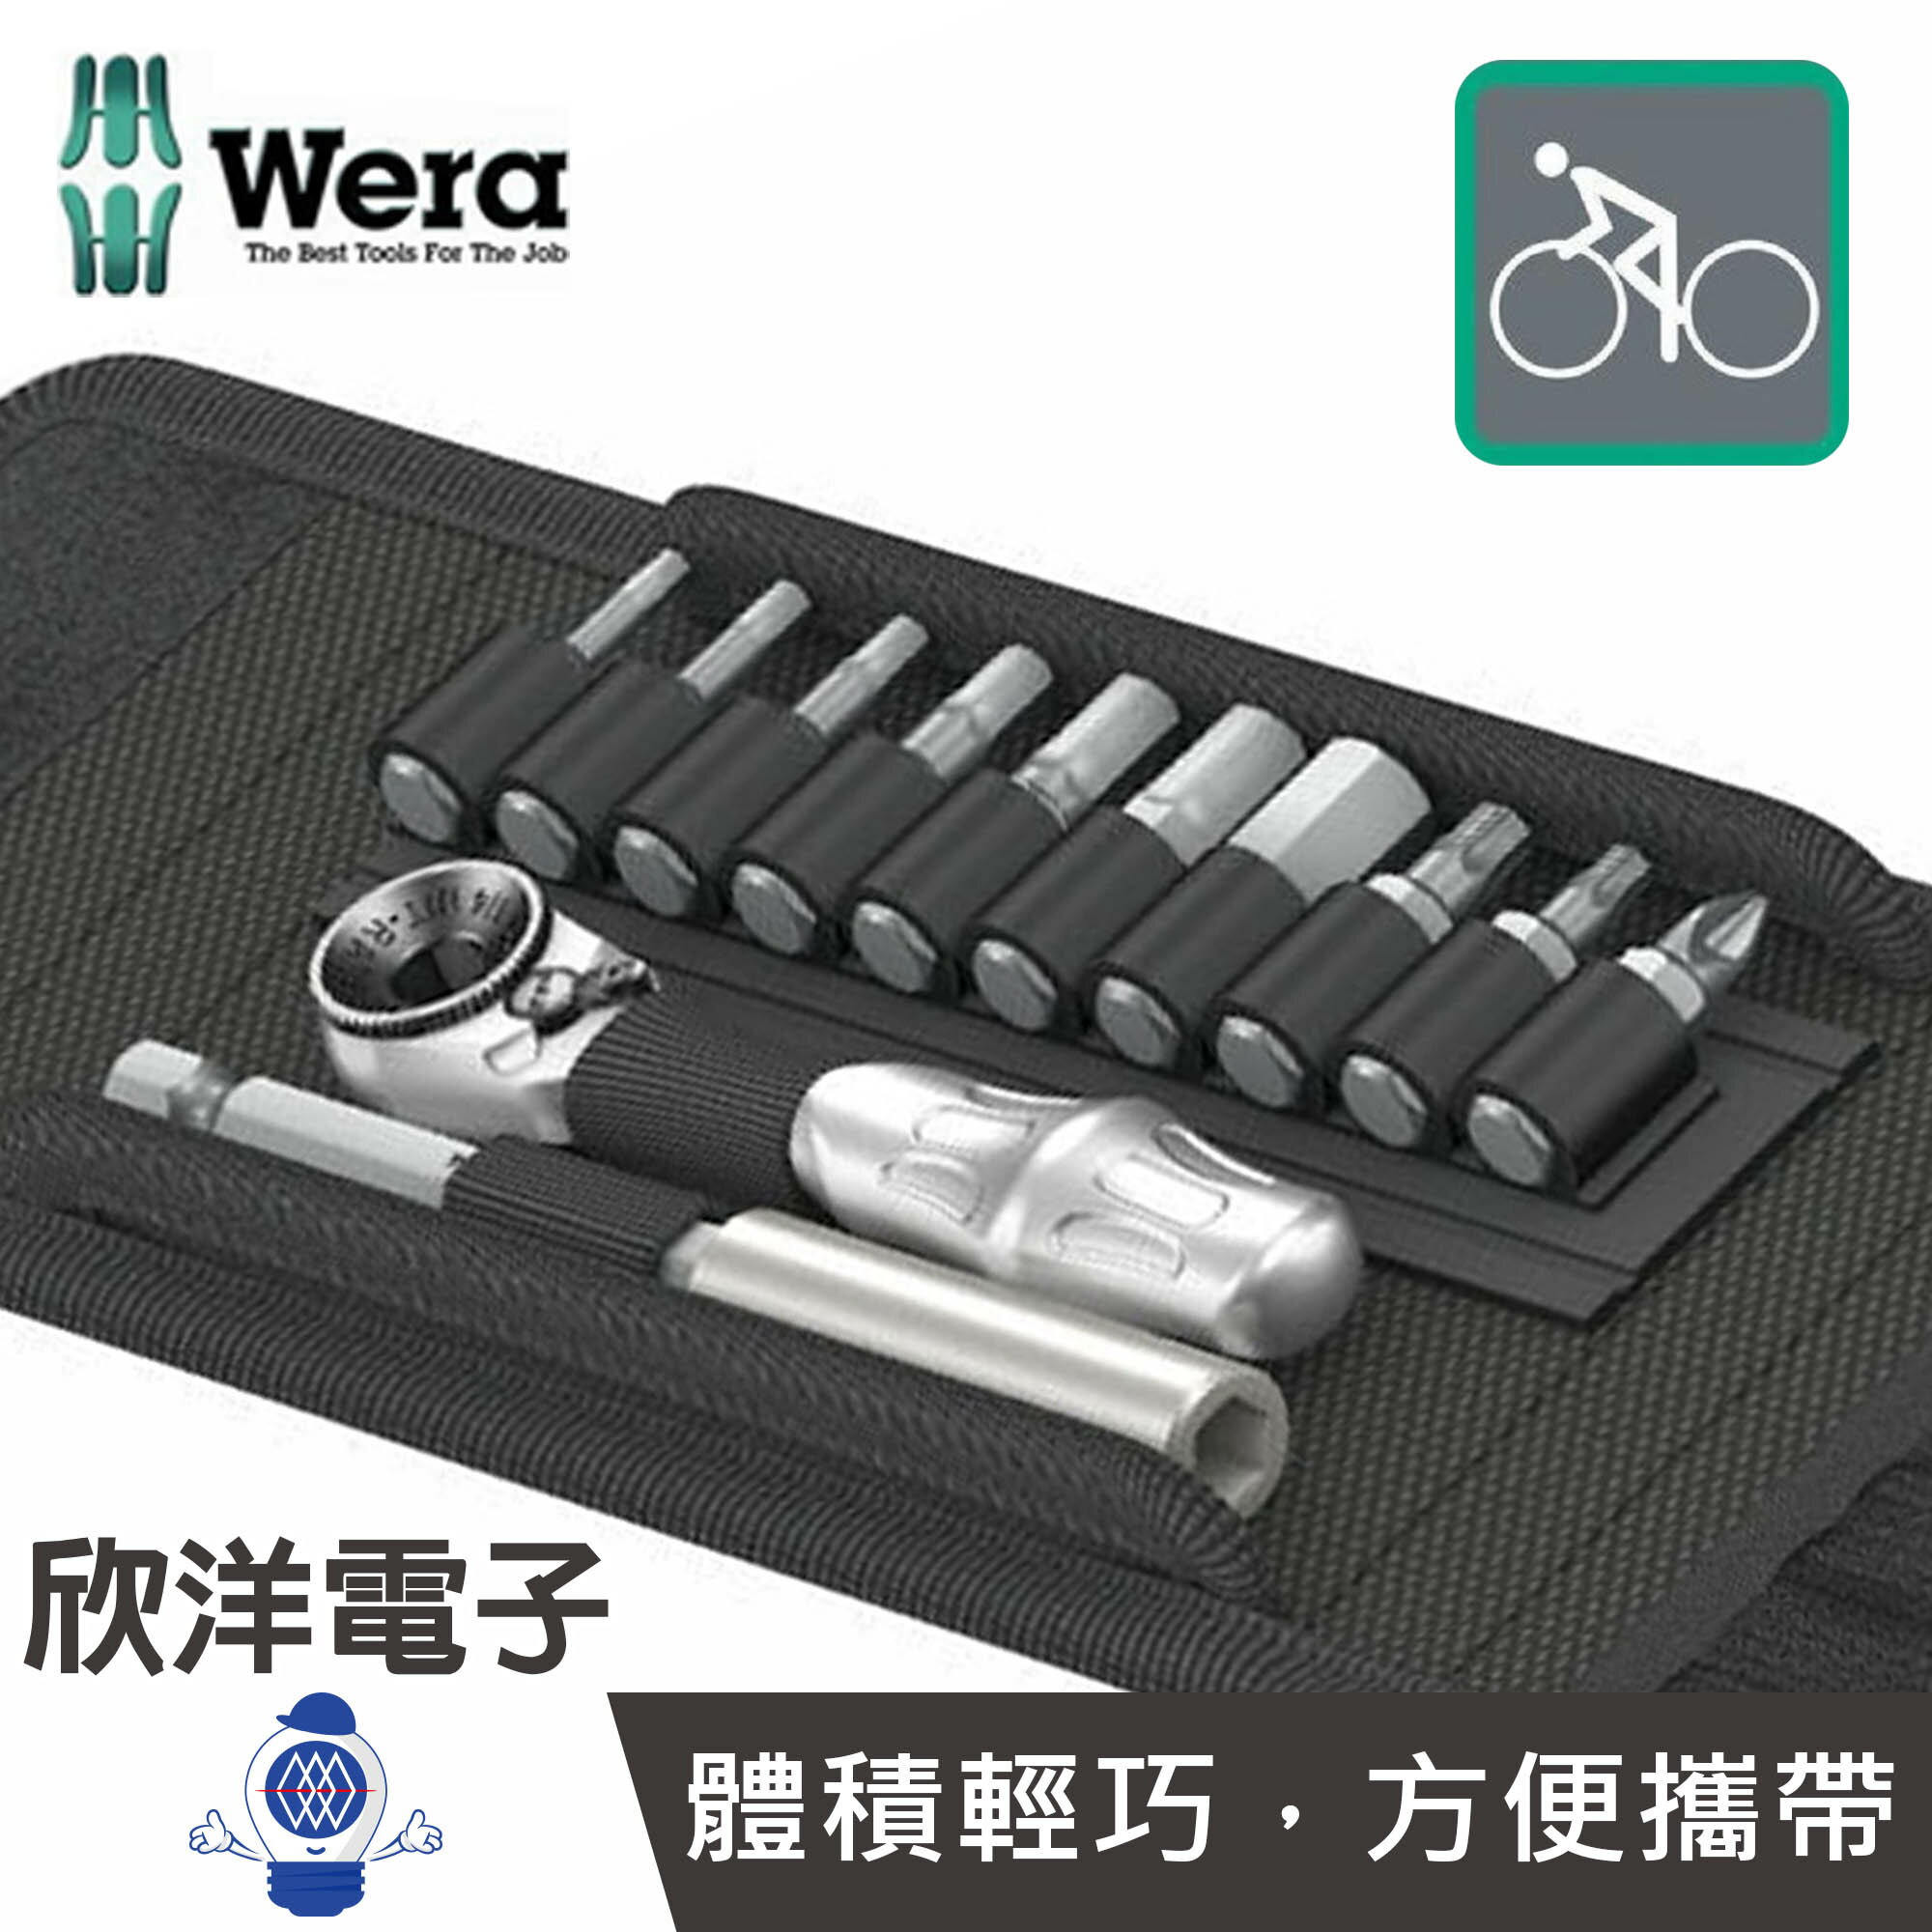 ※ 欣洋電子 ※ 德國 Wera 自行車工具包12件組(Bicycle Set 1) WERA-B1